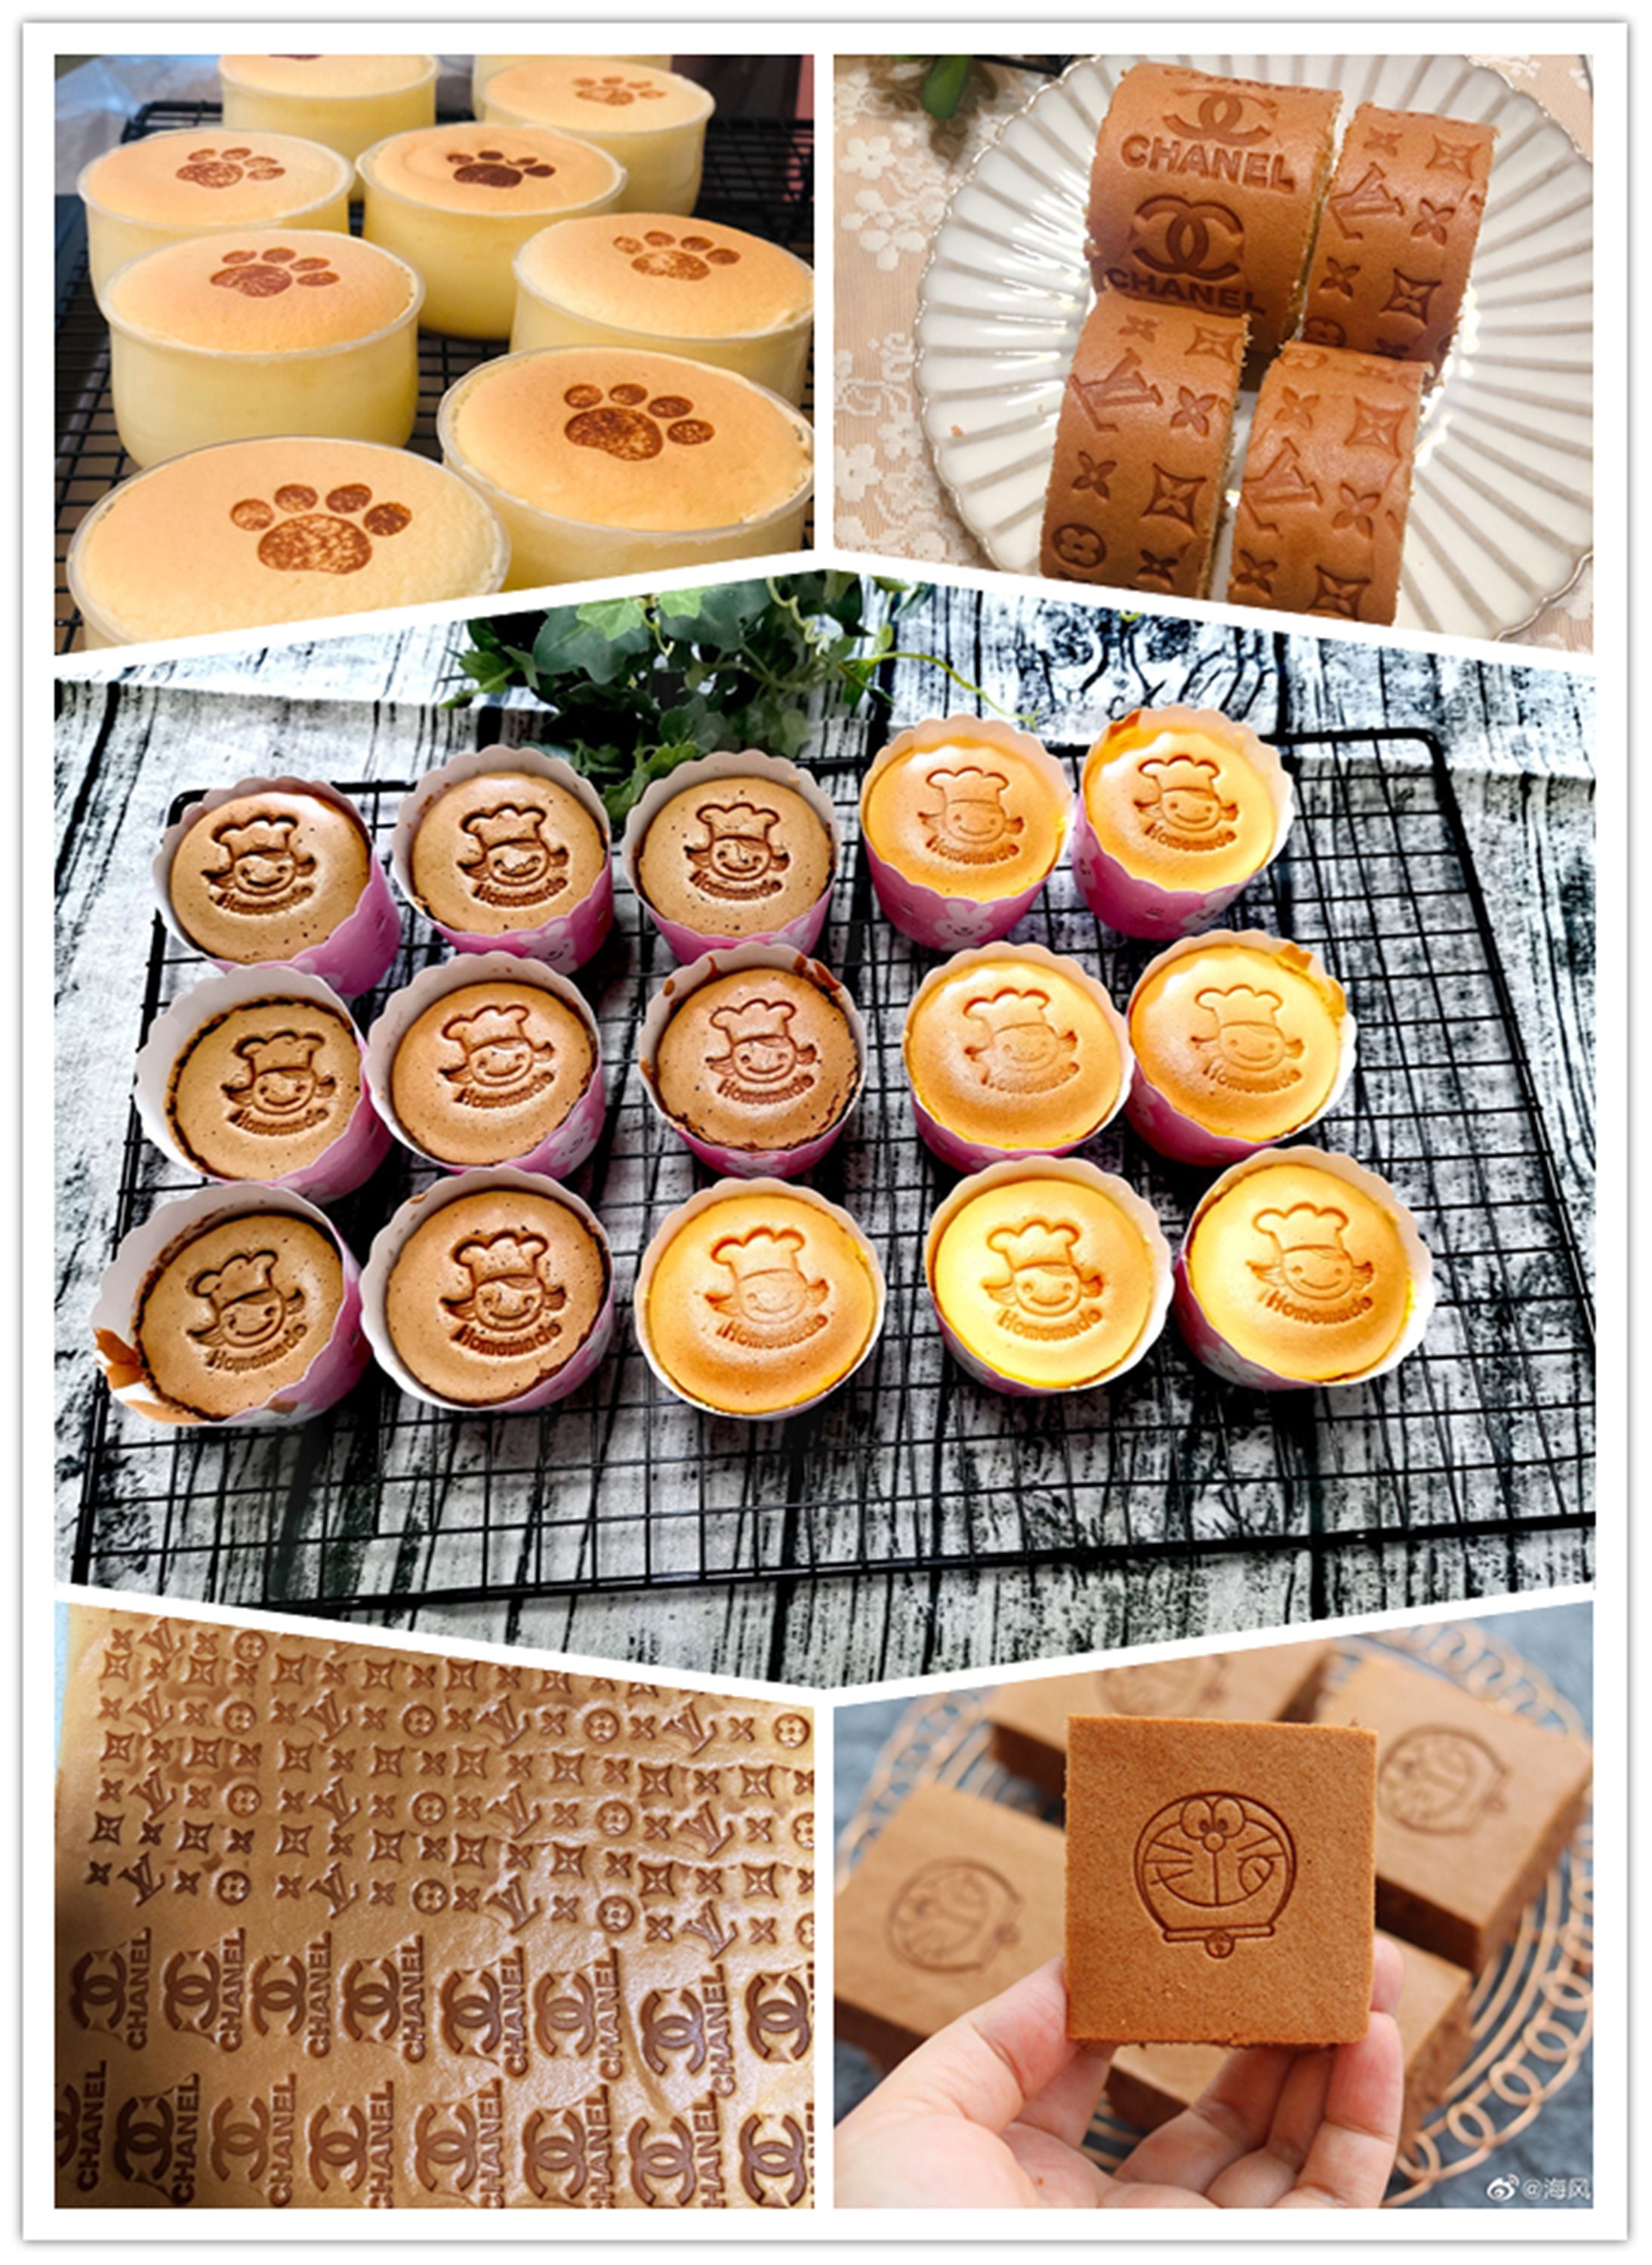 BOSSDEN Custom Logo Hot Stamp Cake Logo Bread Branding Mold Bun Hot  Stamping LOGO Optional Picture Making Custom Brass LOGO